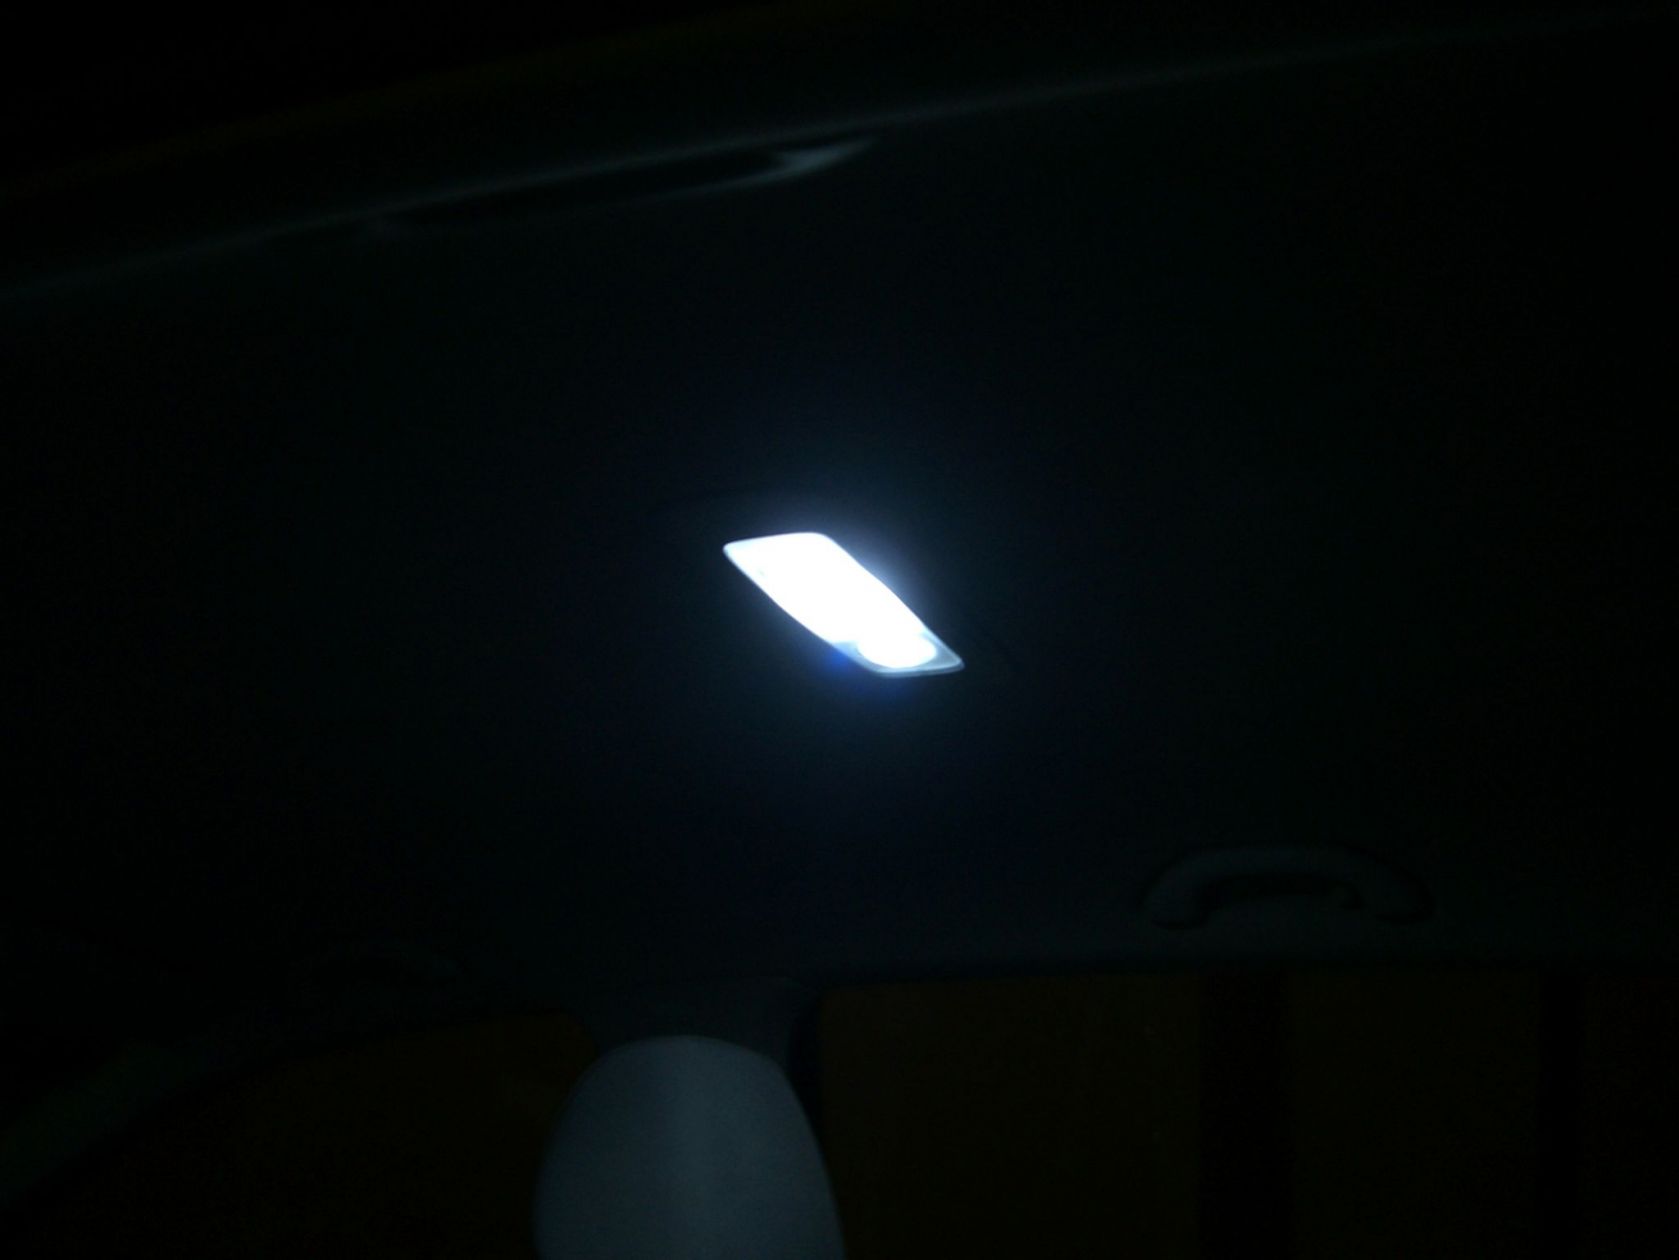 plafo dietro
Plafoniera posteriore a LED della LEDMANIA
